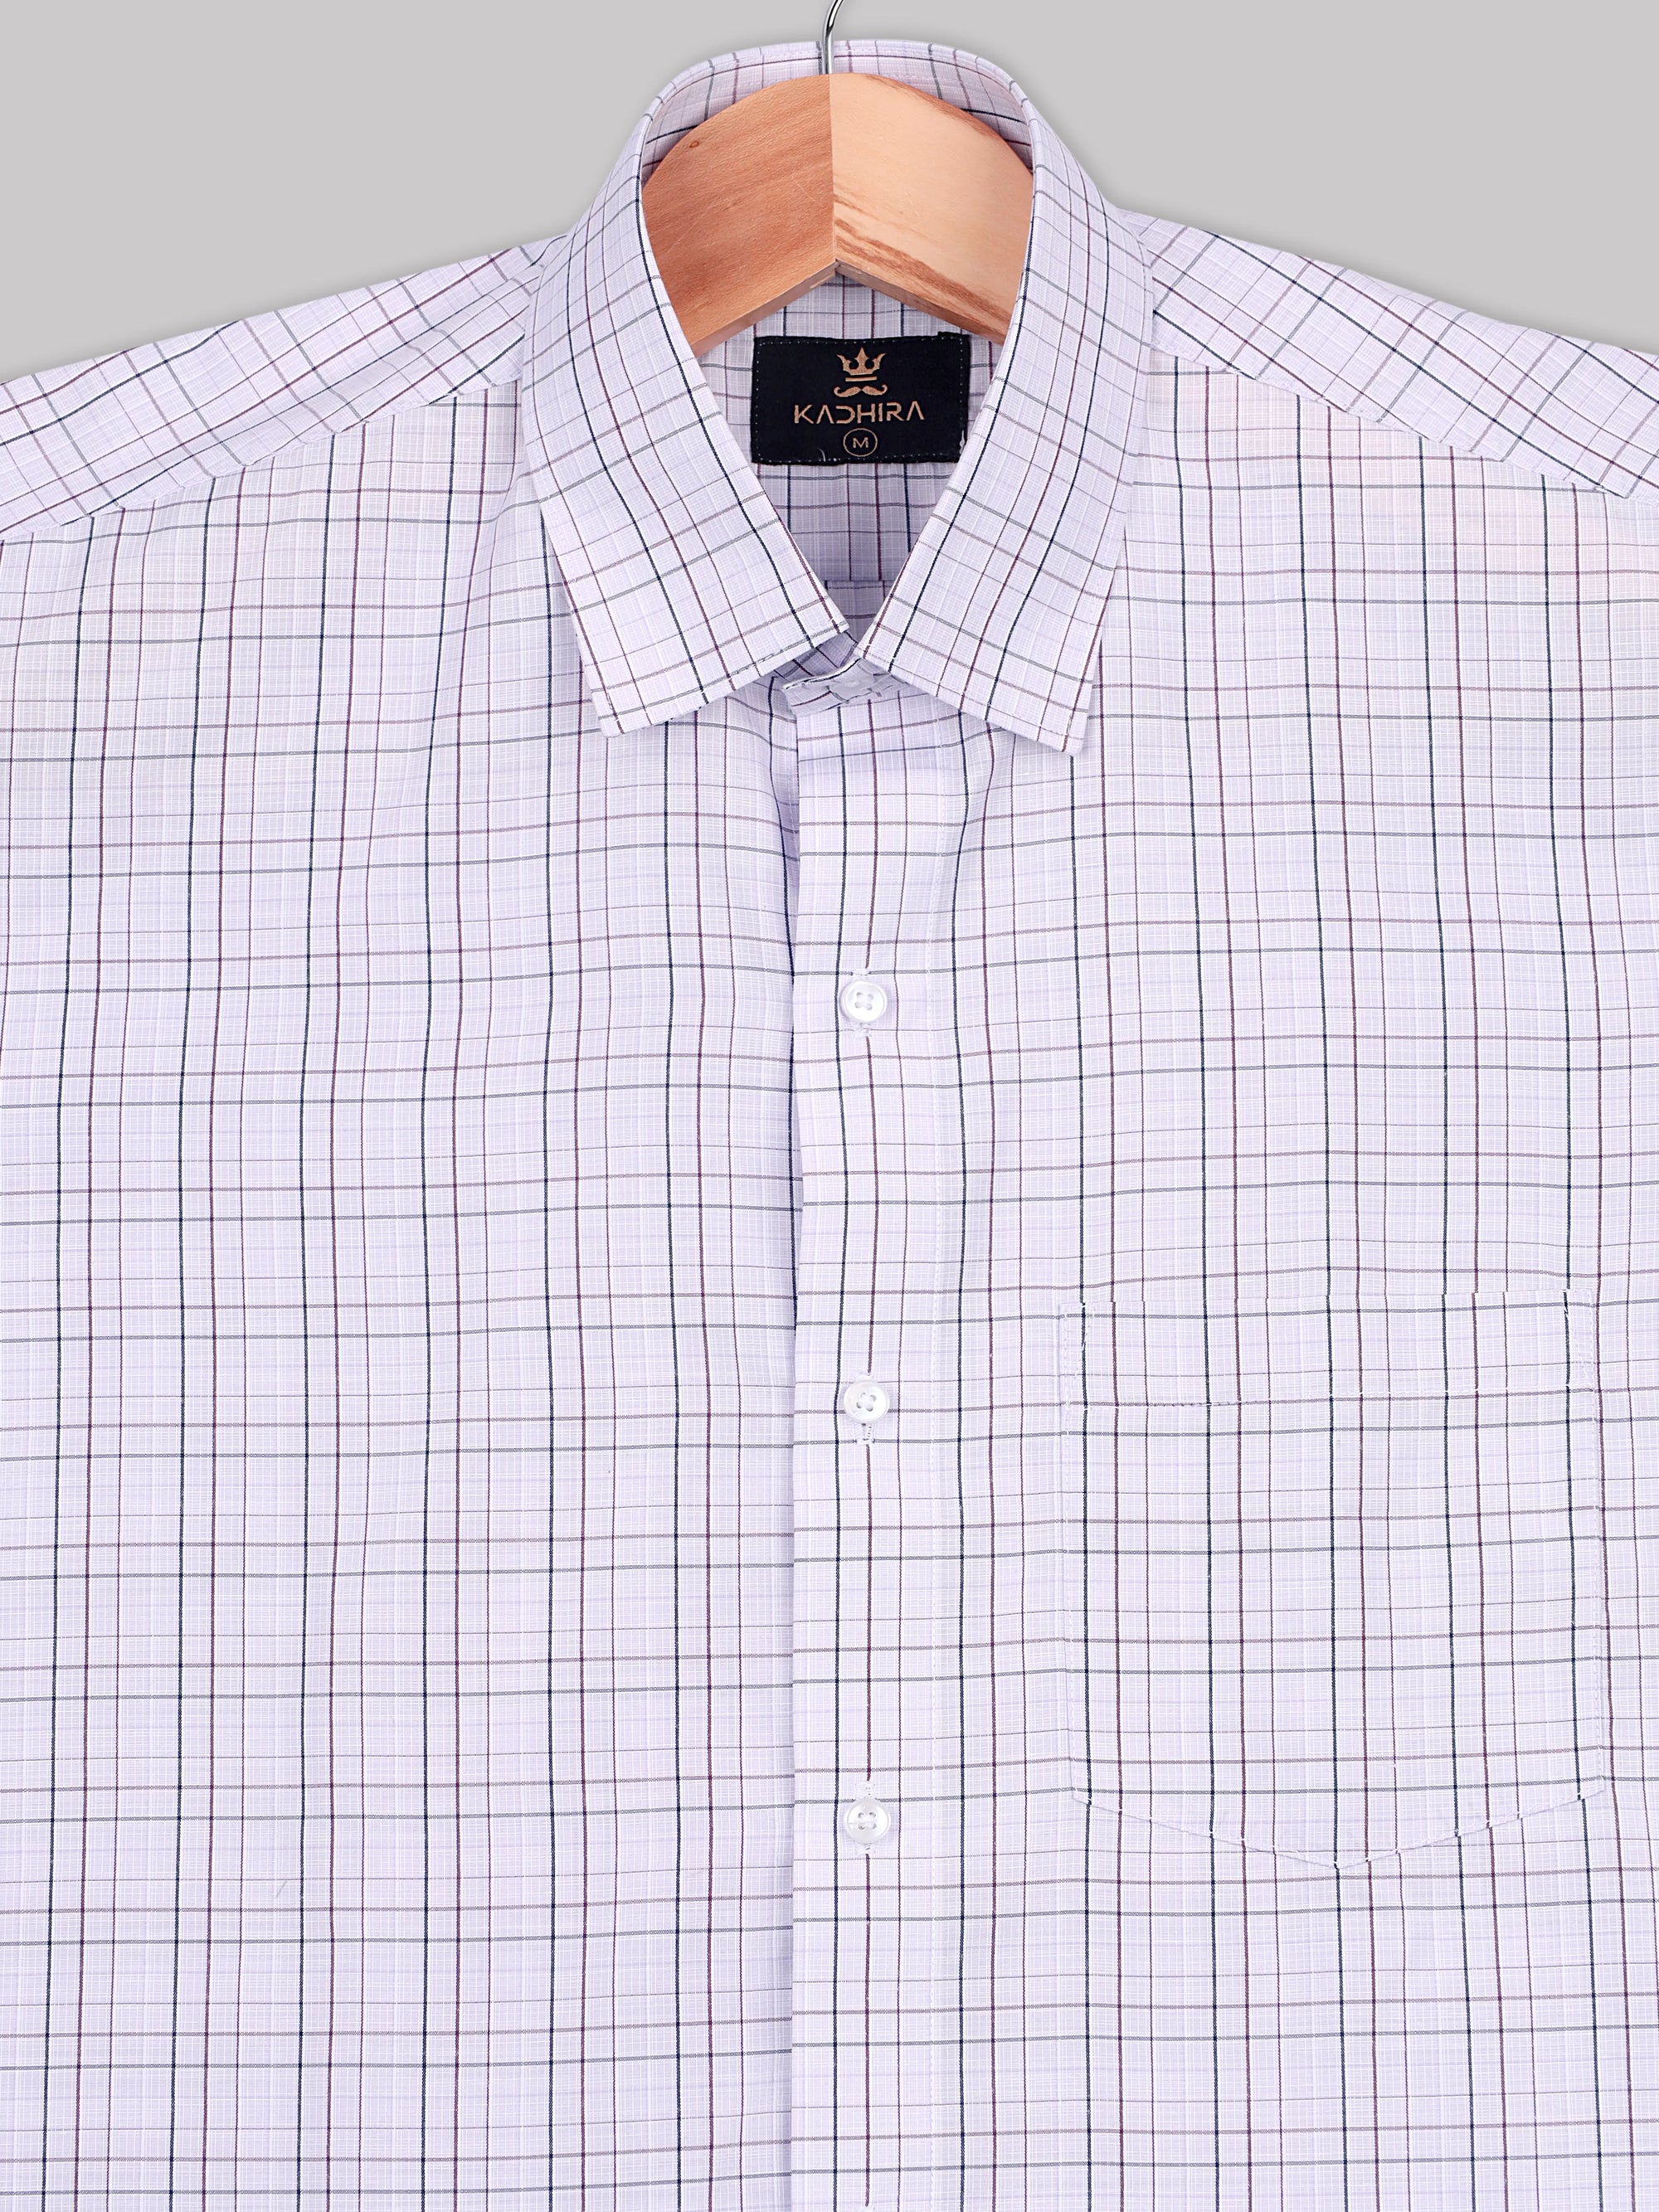 Pale Purple With Navy-Tyrian Purple Tattersall checks Premium Cotton Shirt